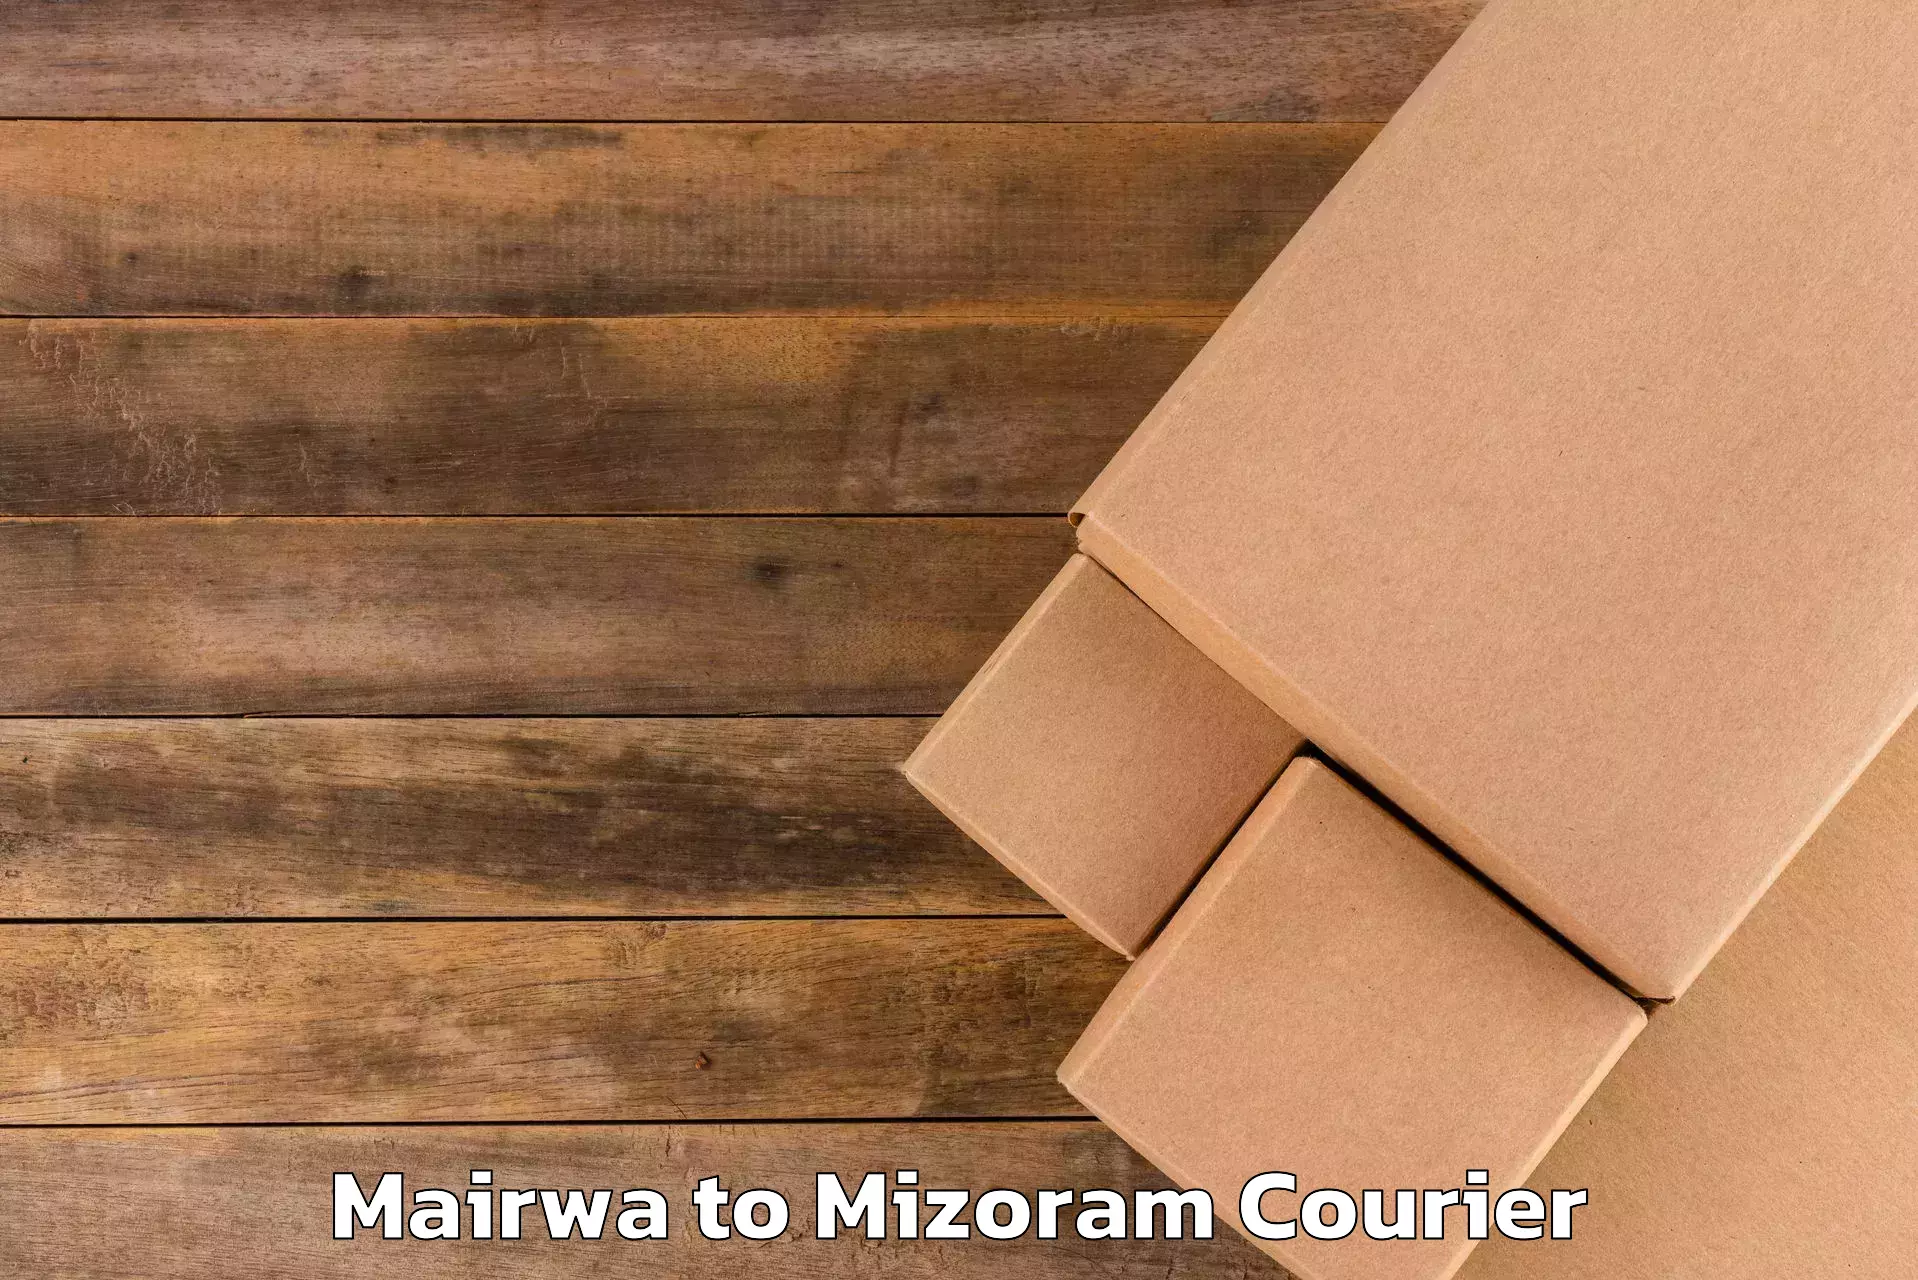 Luggage shipment tracking Mairwa to Mizoram